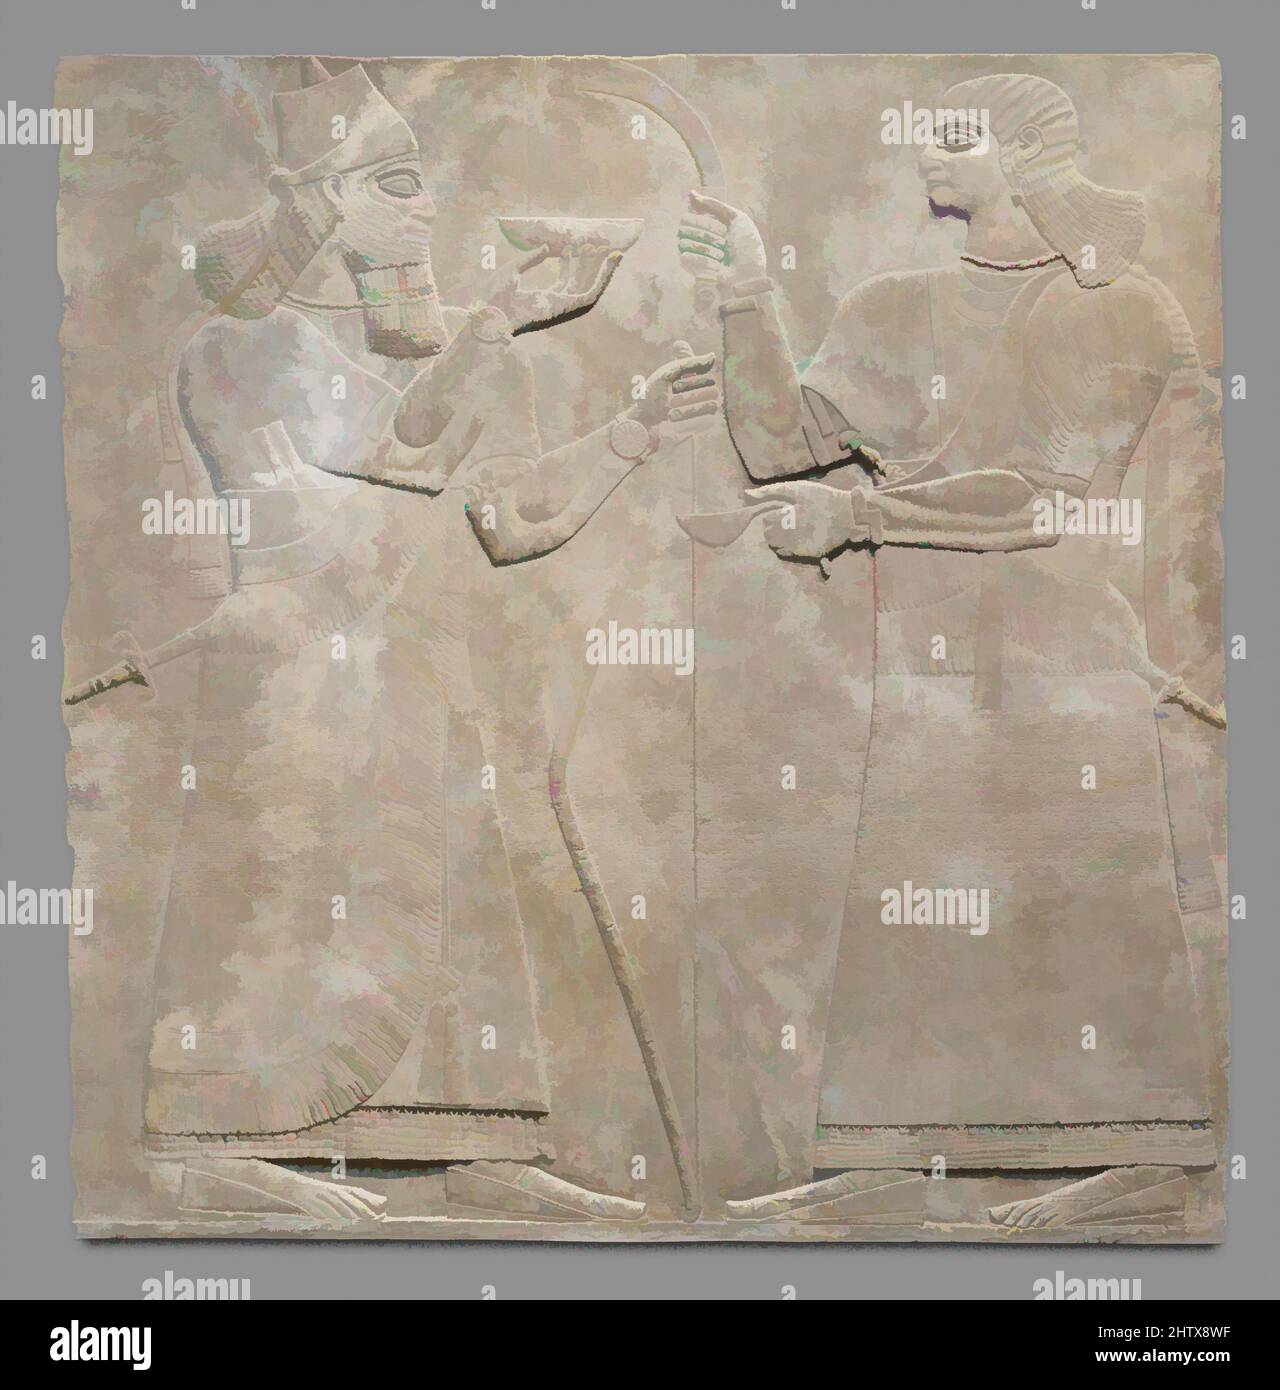 Arte inspirado en el panel de Relieve, Neo-Asiria, ca. 883–859 a.C., Mesopotamia, Nimrud (antiguo Kalhu), Asiria, Yeso alabastro, 92 1/4 x 92 x 4 1/2 pulg. (234,3 x 233,7 x 11,4 cm), Stone-relieves-inscriptos, las habitaciones del palacio en Nimrud fueron decoradas con grandes losas de piedra talladas en baja, obras clásicas modernizadas por Artotop con un toque de modernidad. Formas, color y valor, atractivo impacto visual en el arte Emociones a través de la libertad de las obras de arte de una manera contemporánea. Un mensaje atemporal que busca una nueva dirección totalmente creativa. Artistas que se están volviendo al medio digital y creando el Artotop NFT Foto de stock